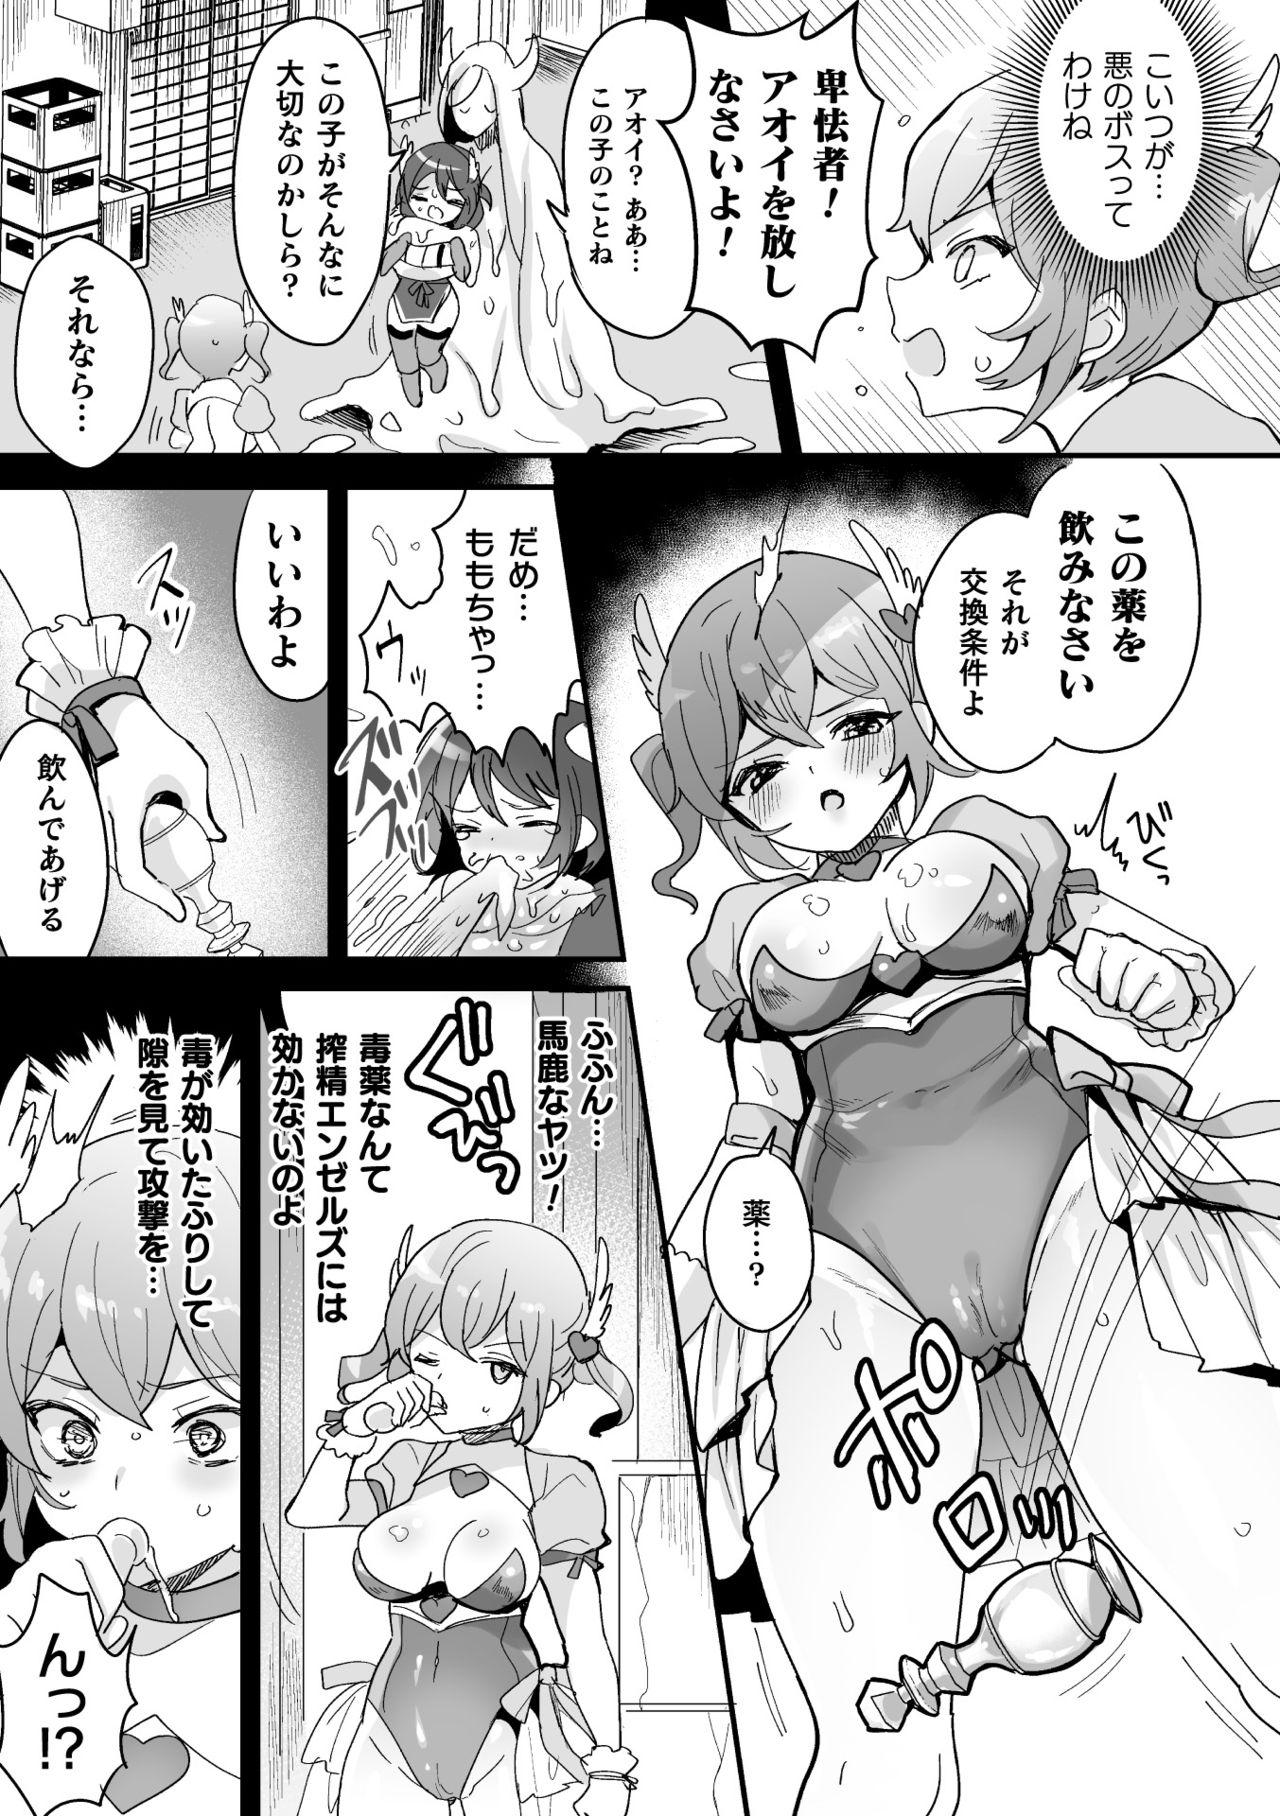 Shesafreak 2D Comic Magazine - Futanari Mesugaki Sakusei Namaiki Zako Mesu Sao o Wakarase Shibori! Vol. 2 Sixtynine - Page 9